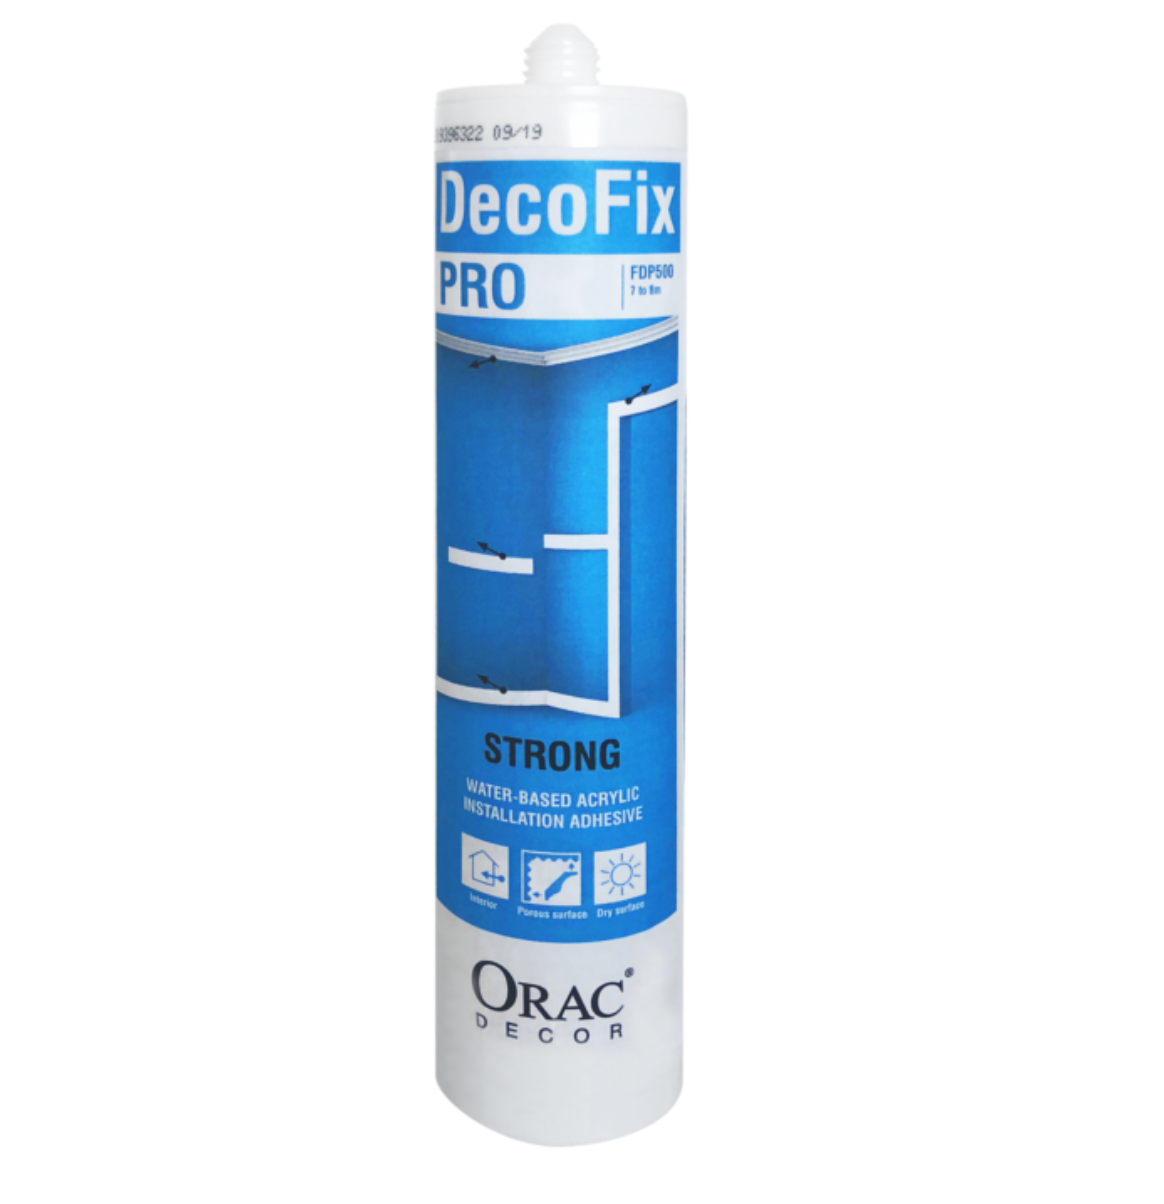 Orac Decor Adhesives - Decrofix Pro FDP500